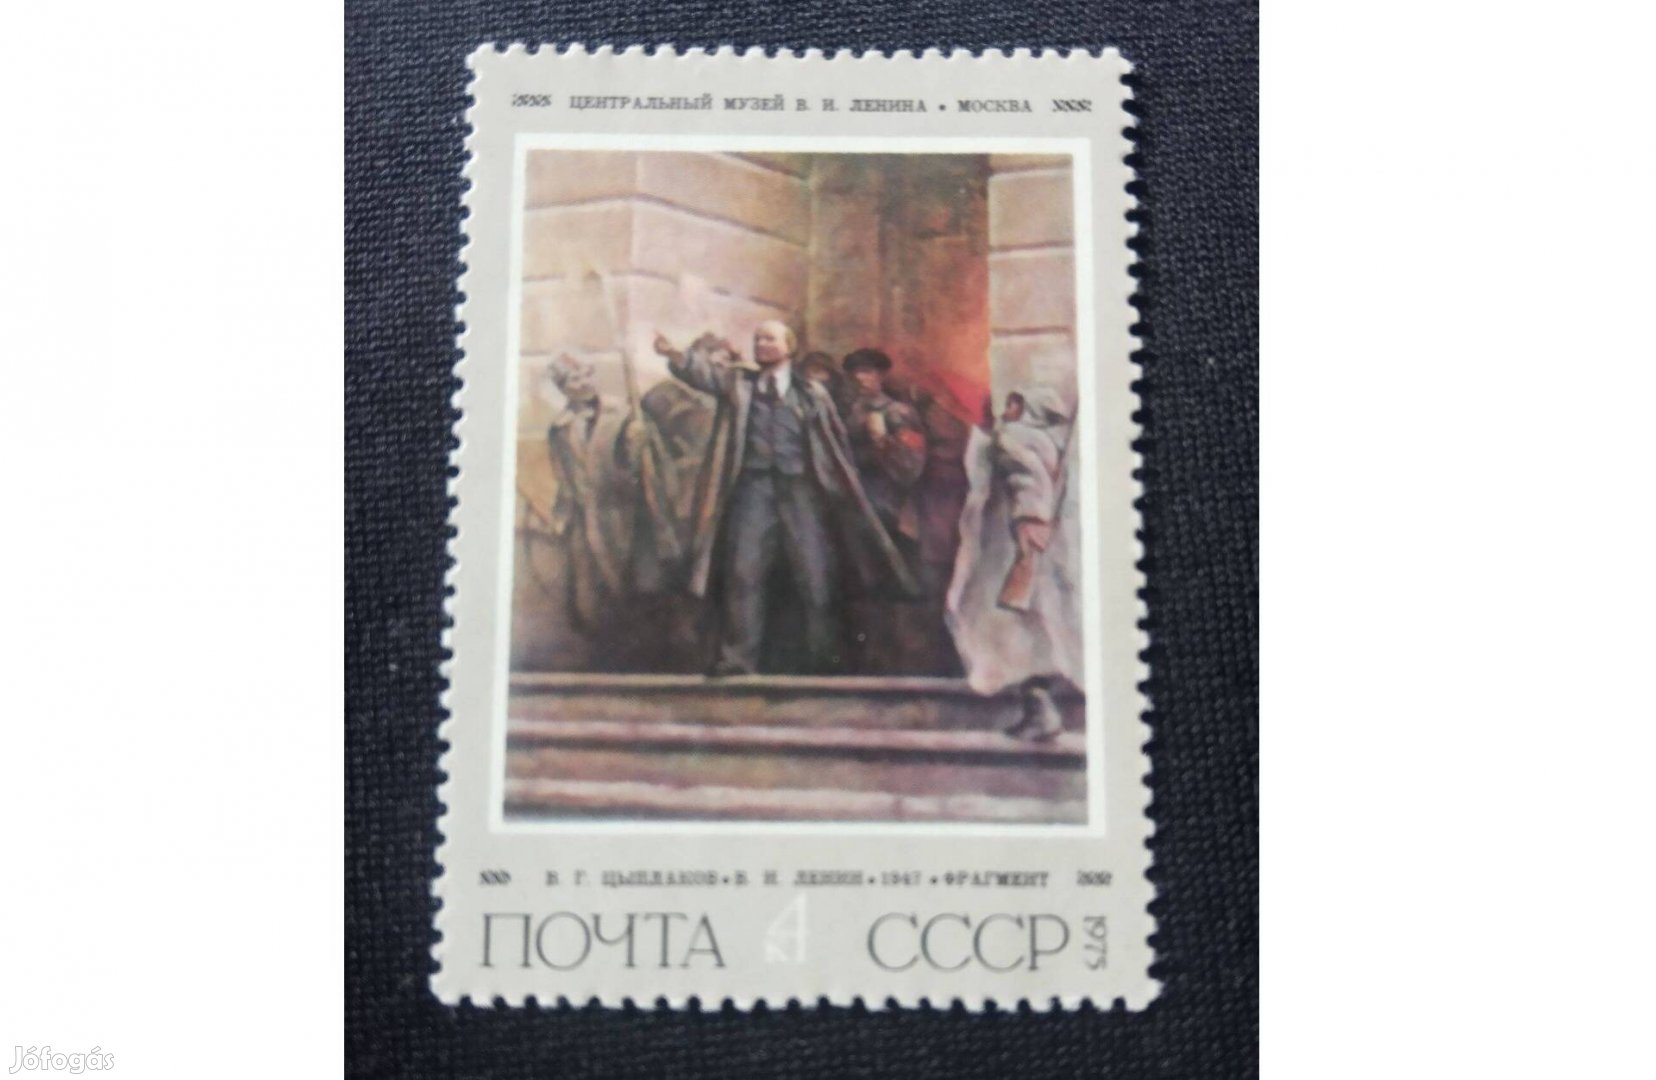 1975 Lenin születésének 105. évfordulója Szovjetunió postatiszta bélye